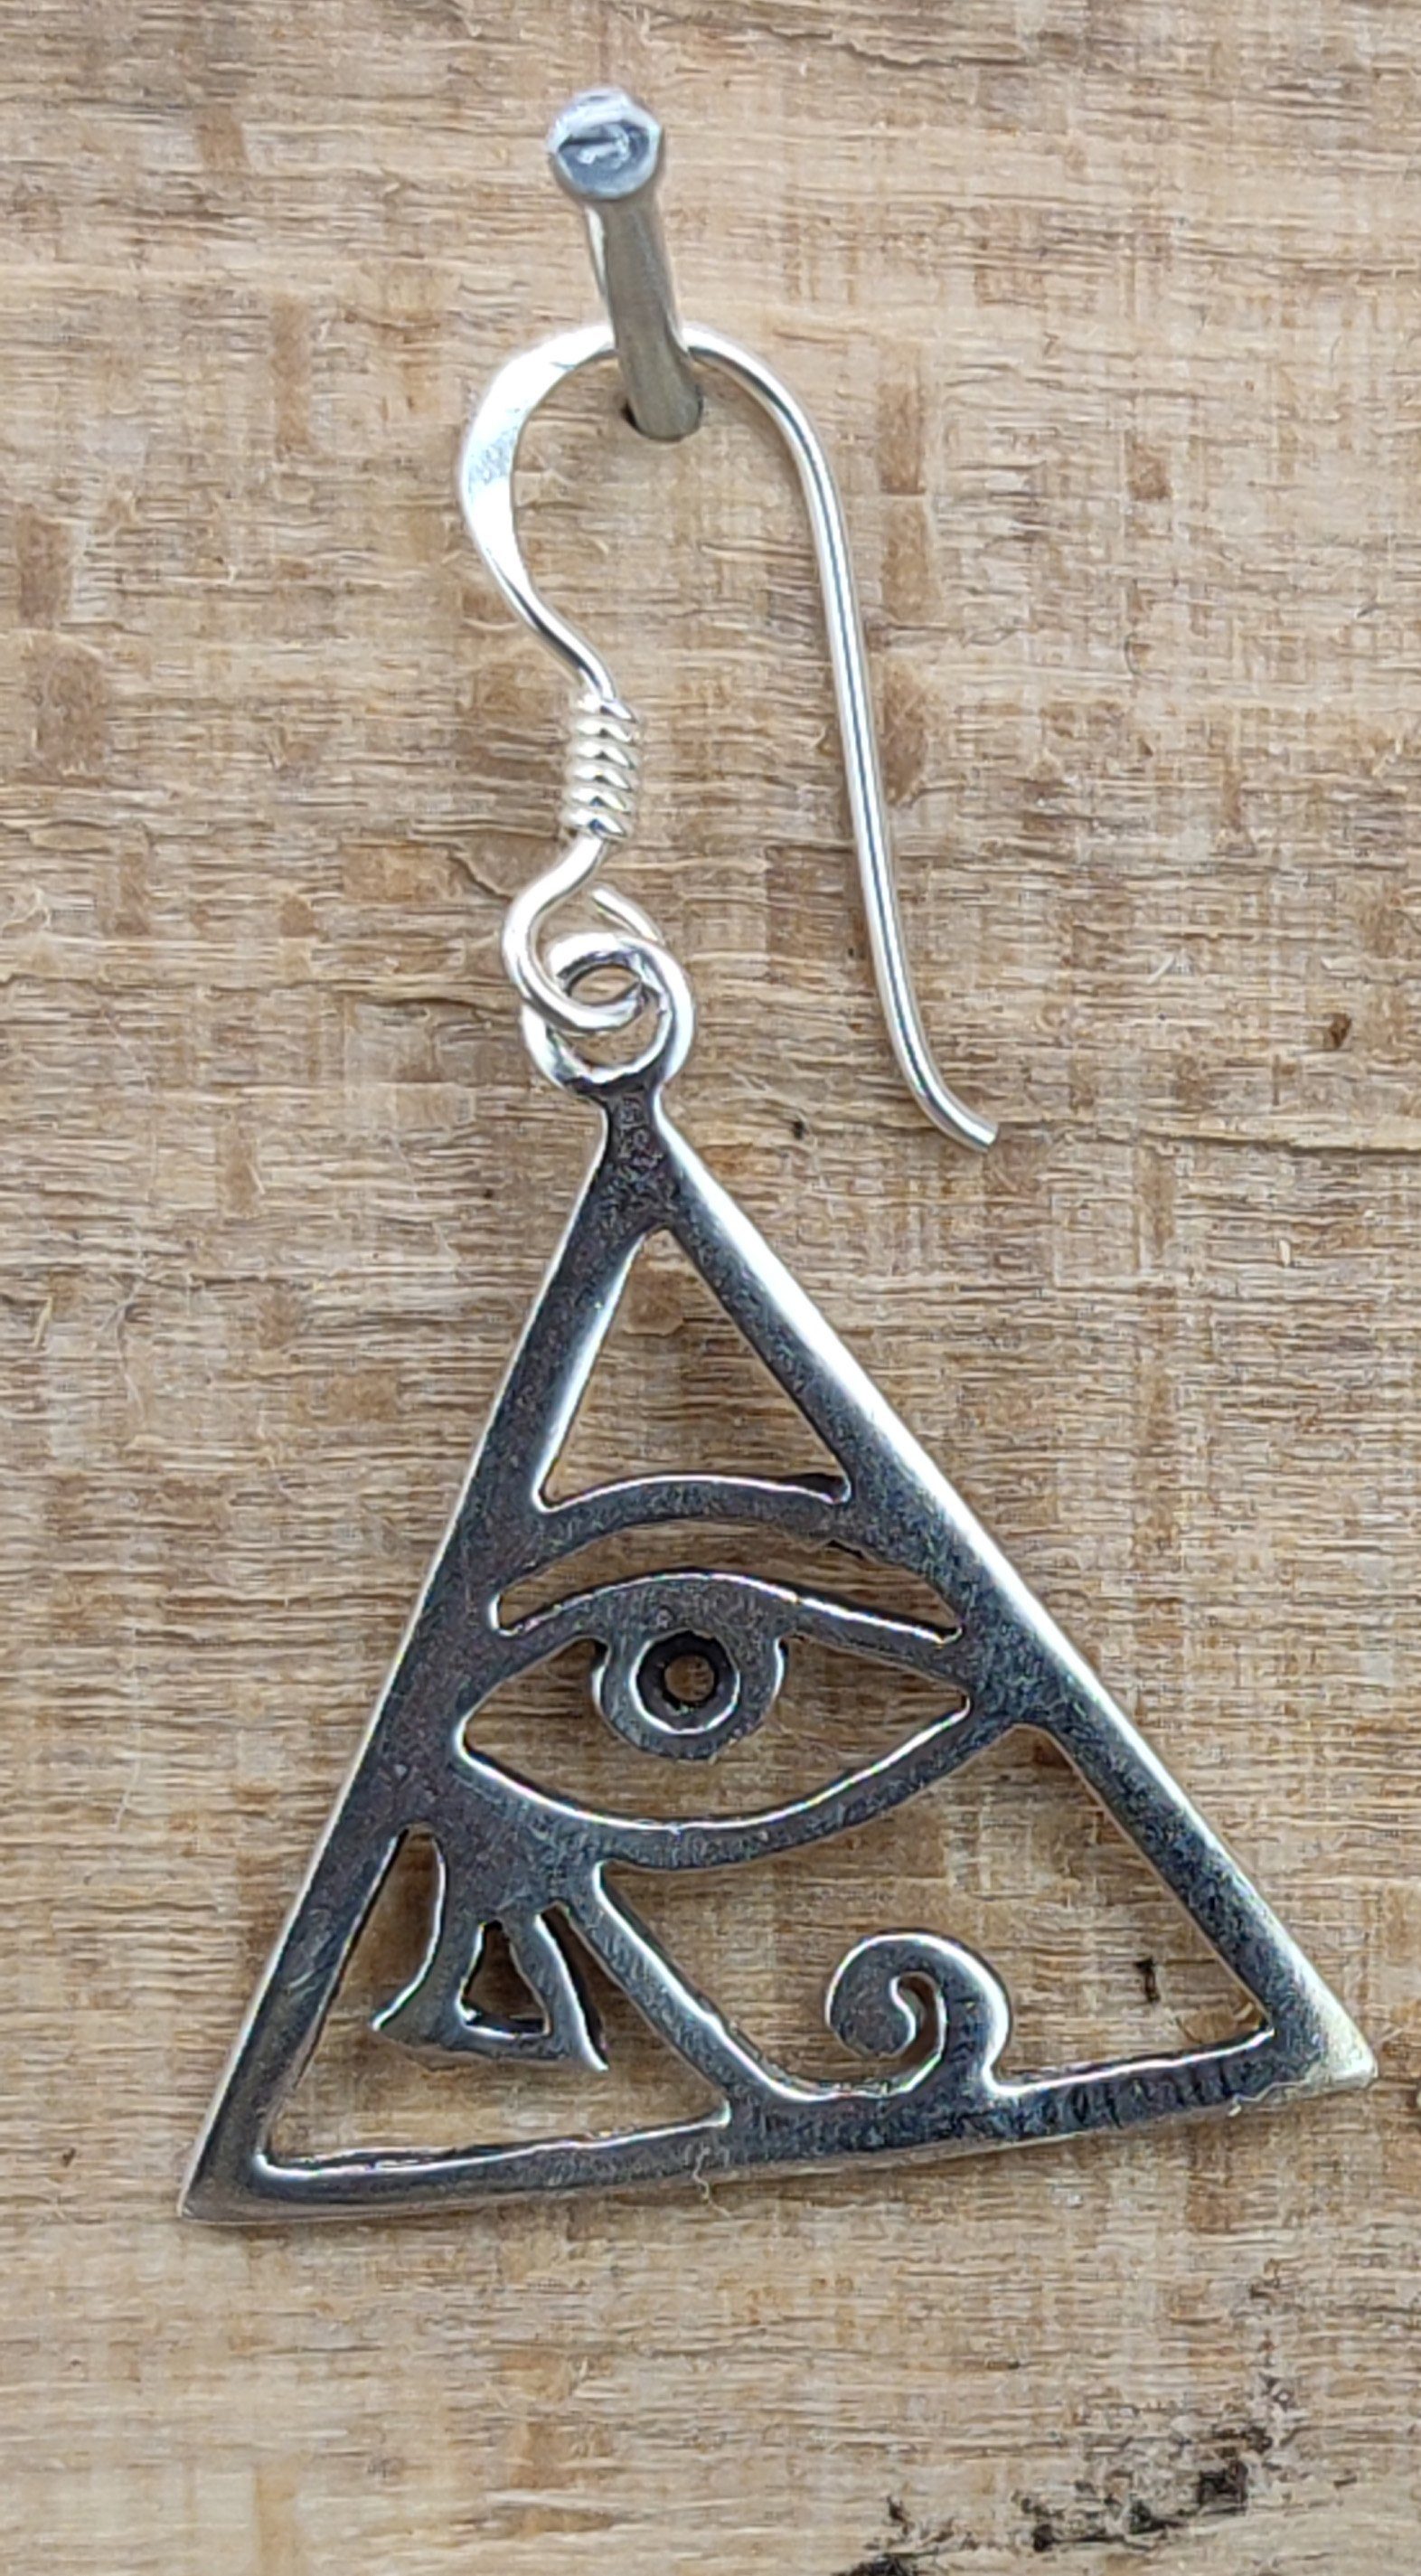 Horus OR15 Ohrhänger-Set Ohrhänger des Leather Horusauge Auge Ohrring Kiss Ohrringe of